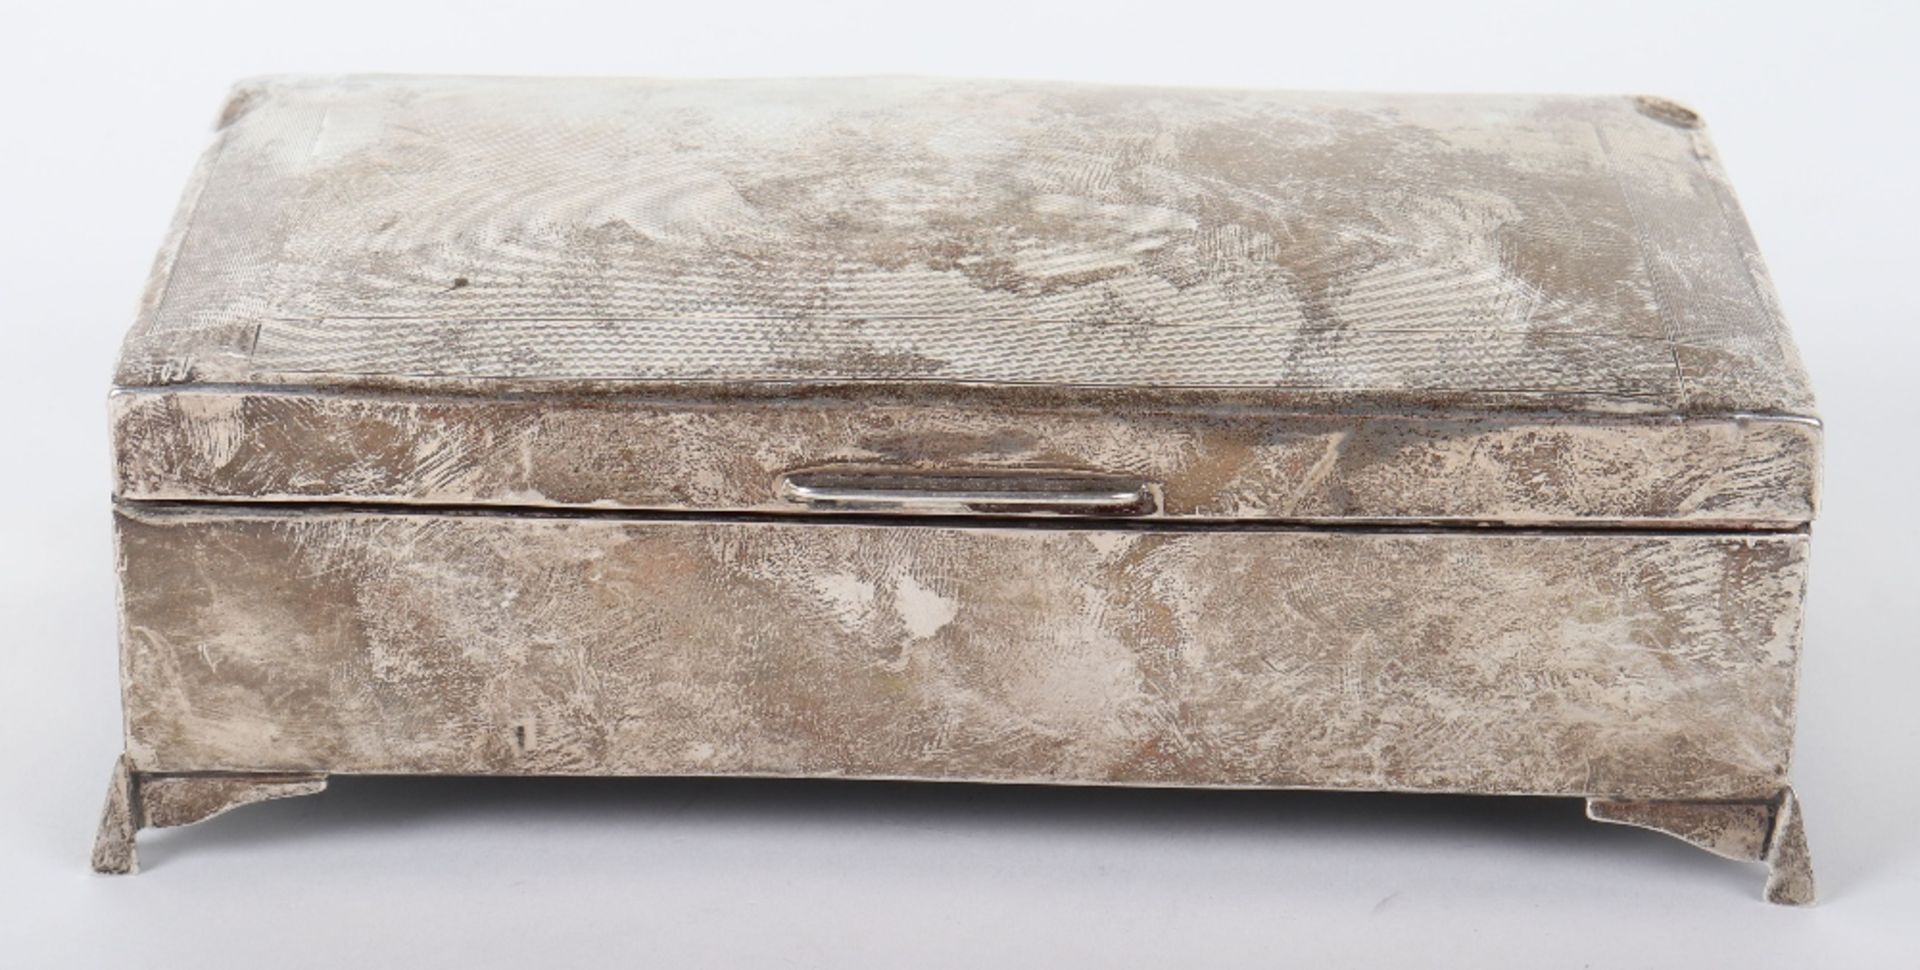 A 20th century silver cigarette box, marked rubbed